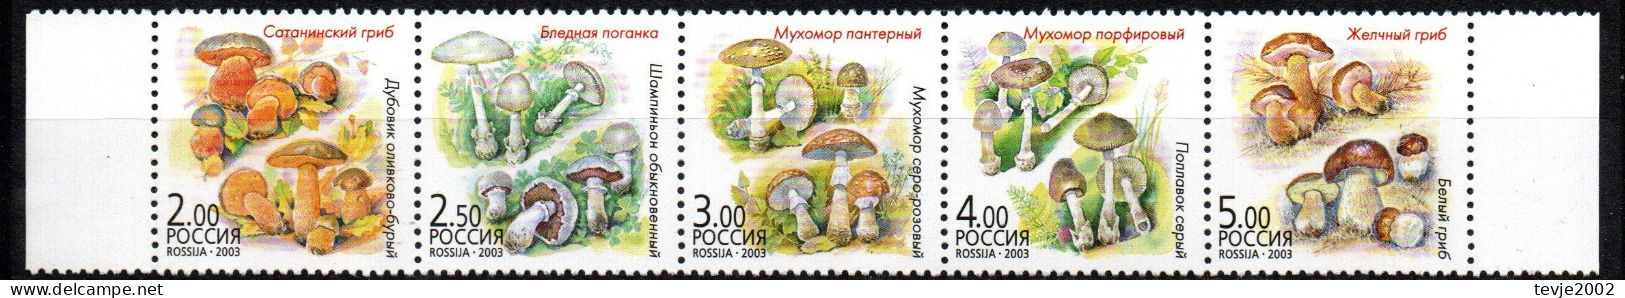 Russland 2003 - Mi.Nr. 1108 - 1112 - Postfrisch MNH - Pilze Mushrooms - Champignons